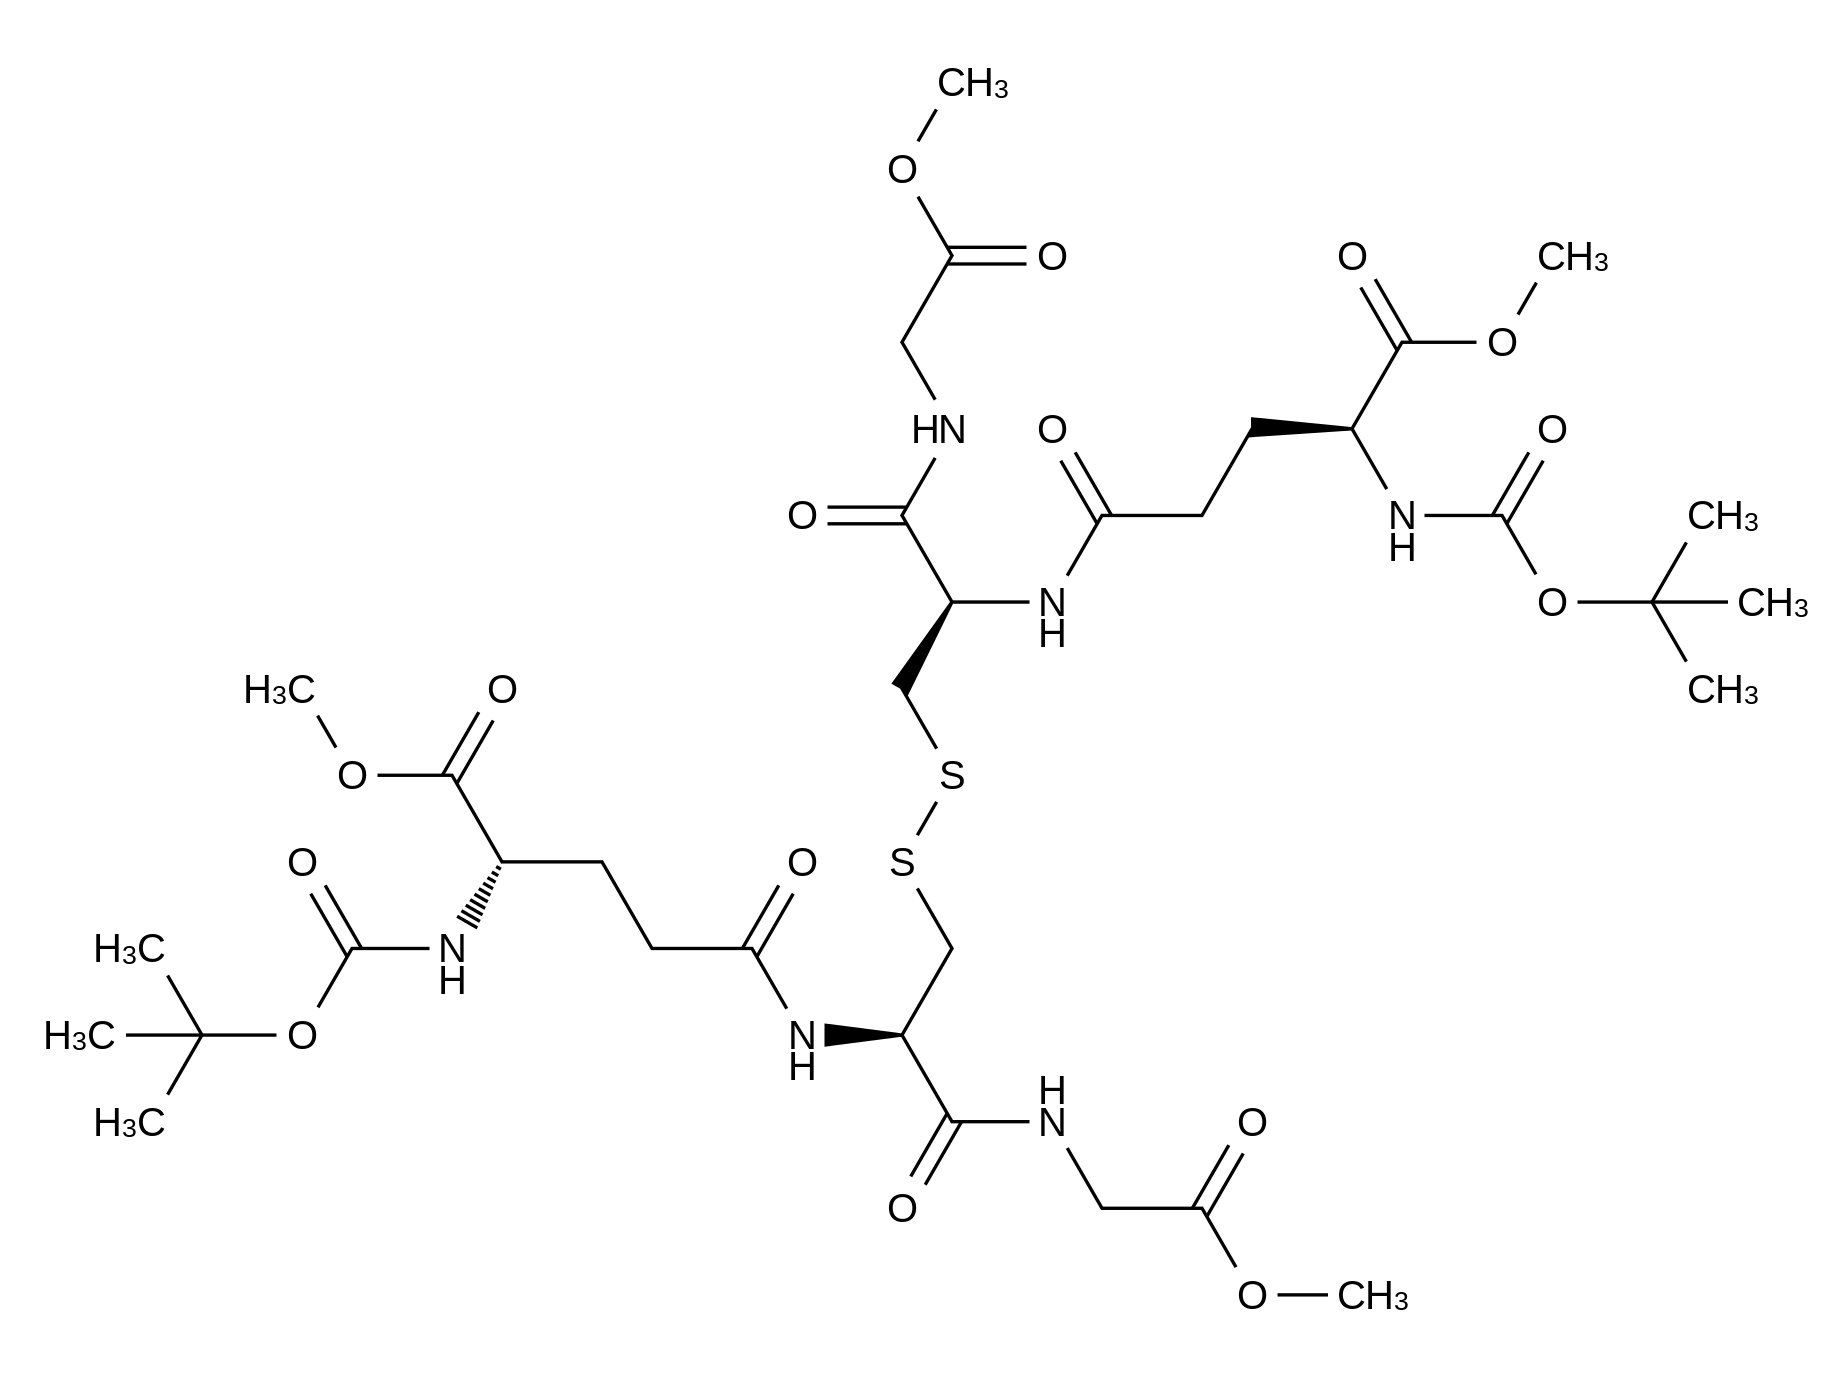 N-tert-Butyloxycarbonyl Glutathione Dimethyl Diester Disulfide Dimer